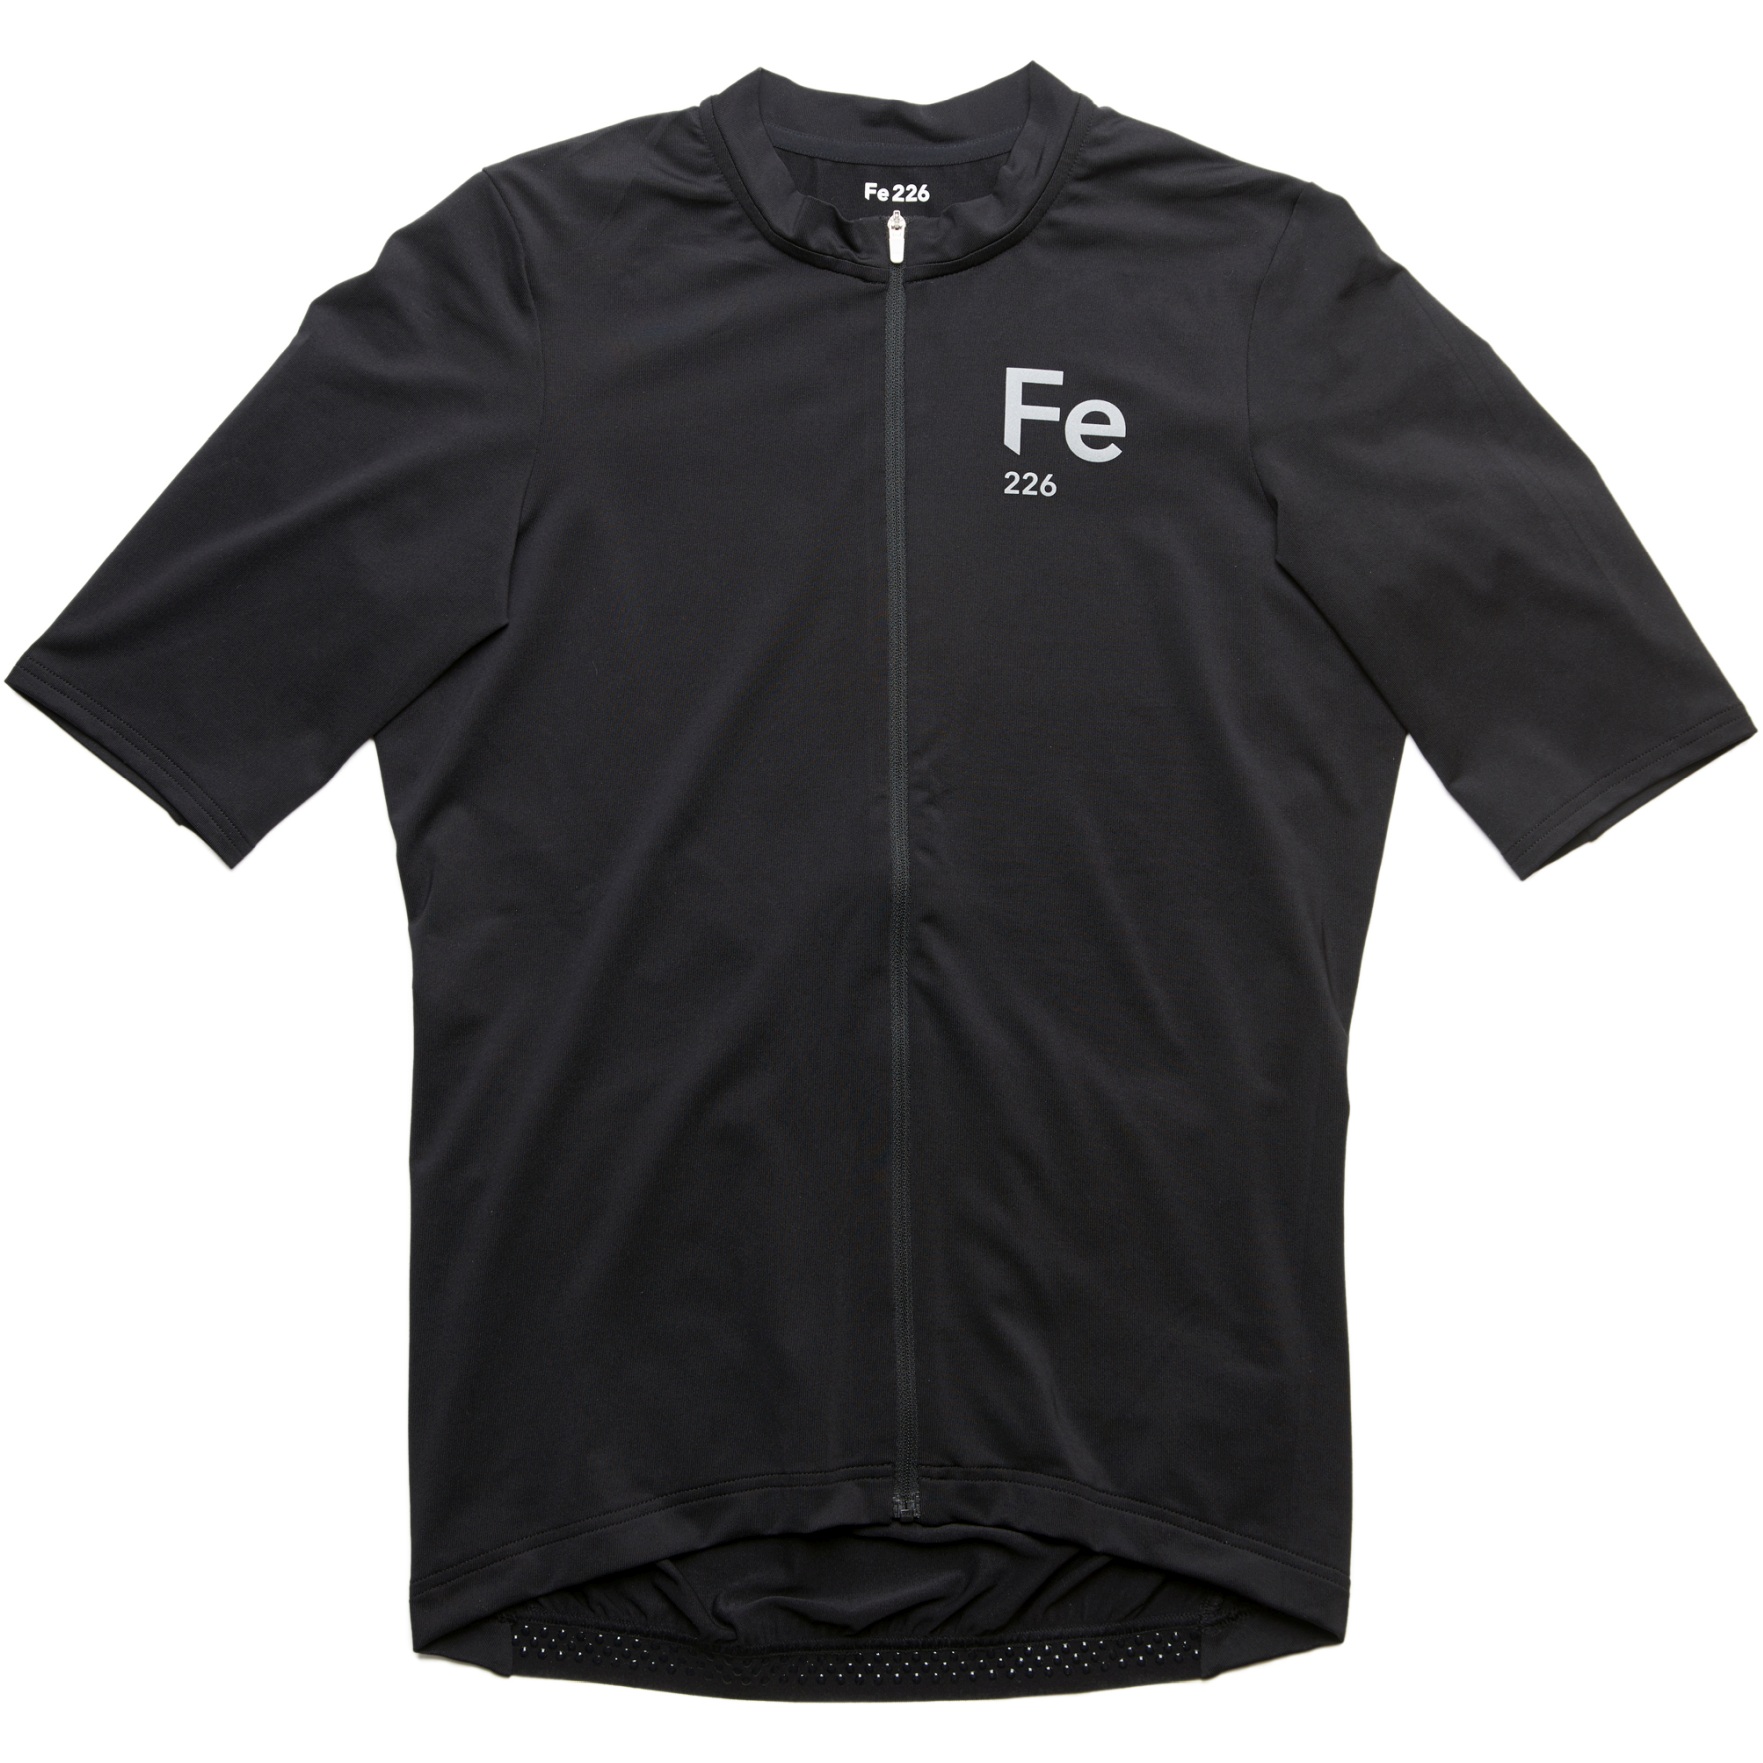 Fe226 StrongRide Bike Jersey - black | BIKE24